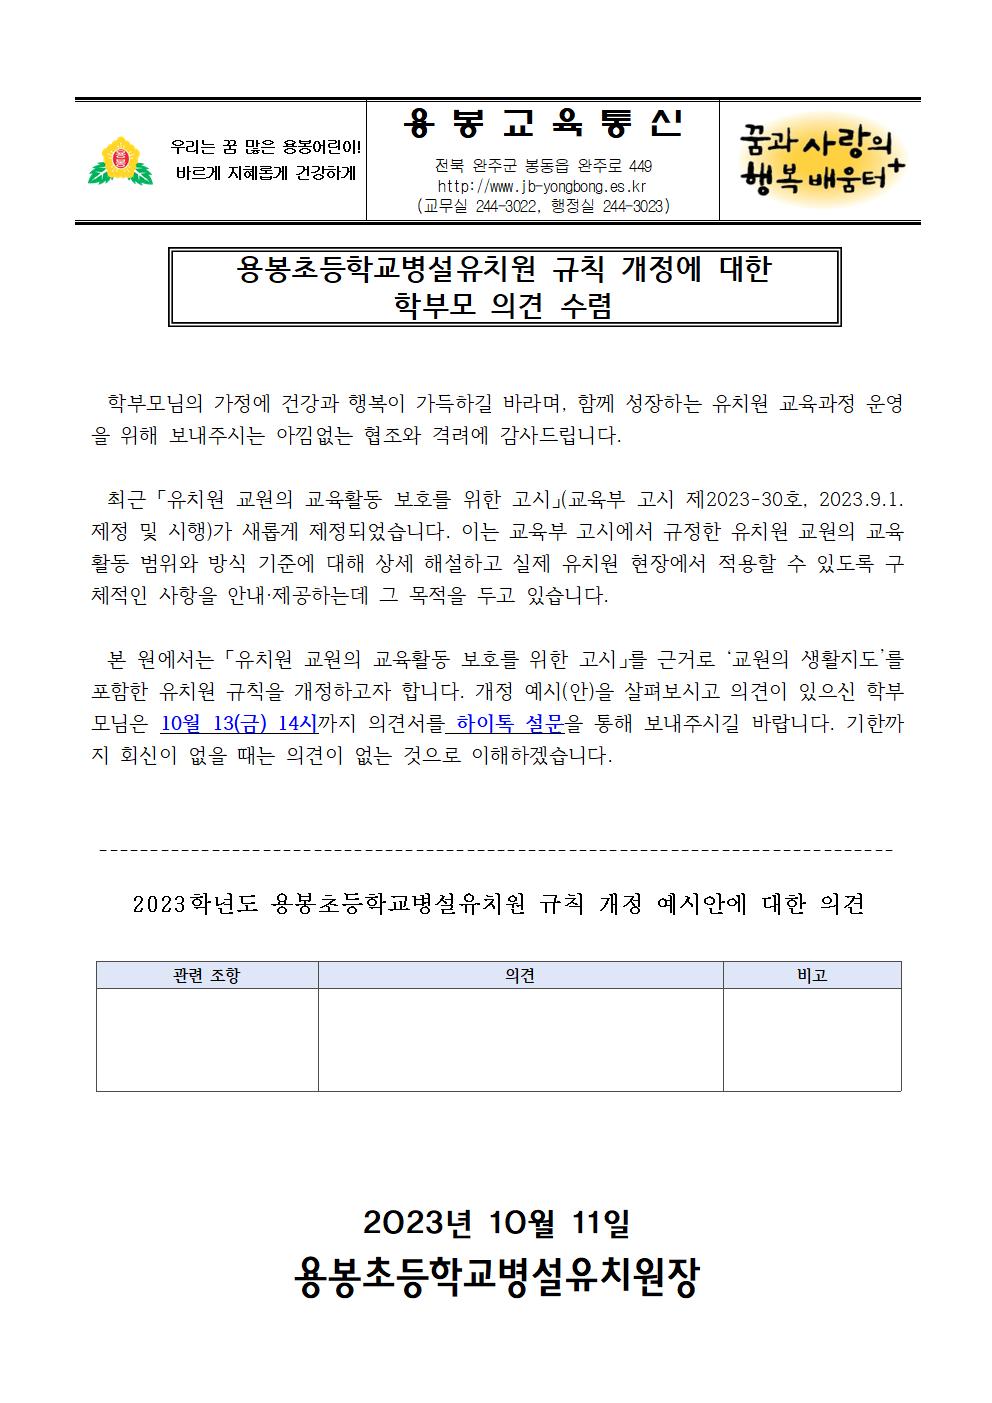 2023 용봉초등학교병설유치원 규칙 개정 의견 수렴 안내장001